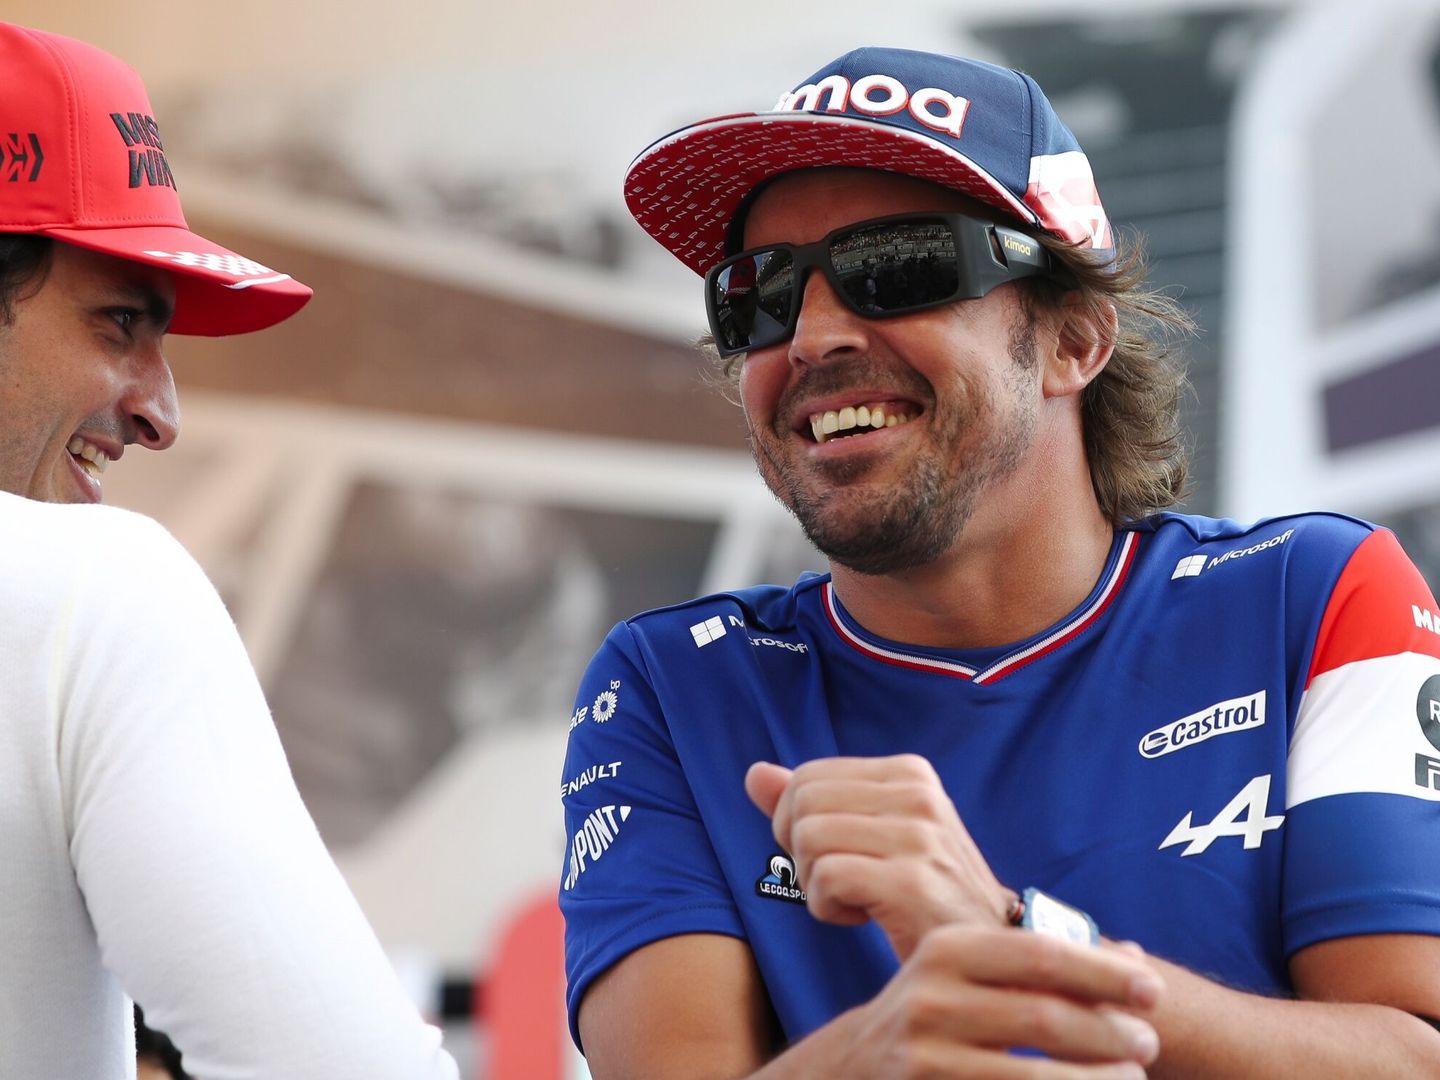 Alonso terminó de nuevo en los puntos en Yas Marina, y décimo final del campeonato. (EFE/Ali Haider) 